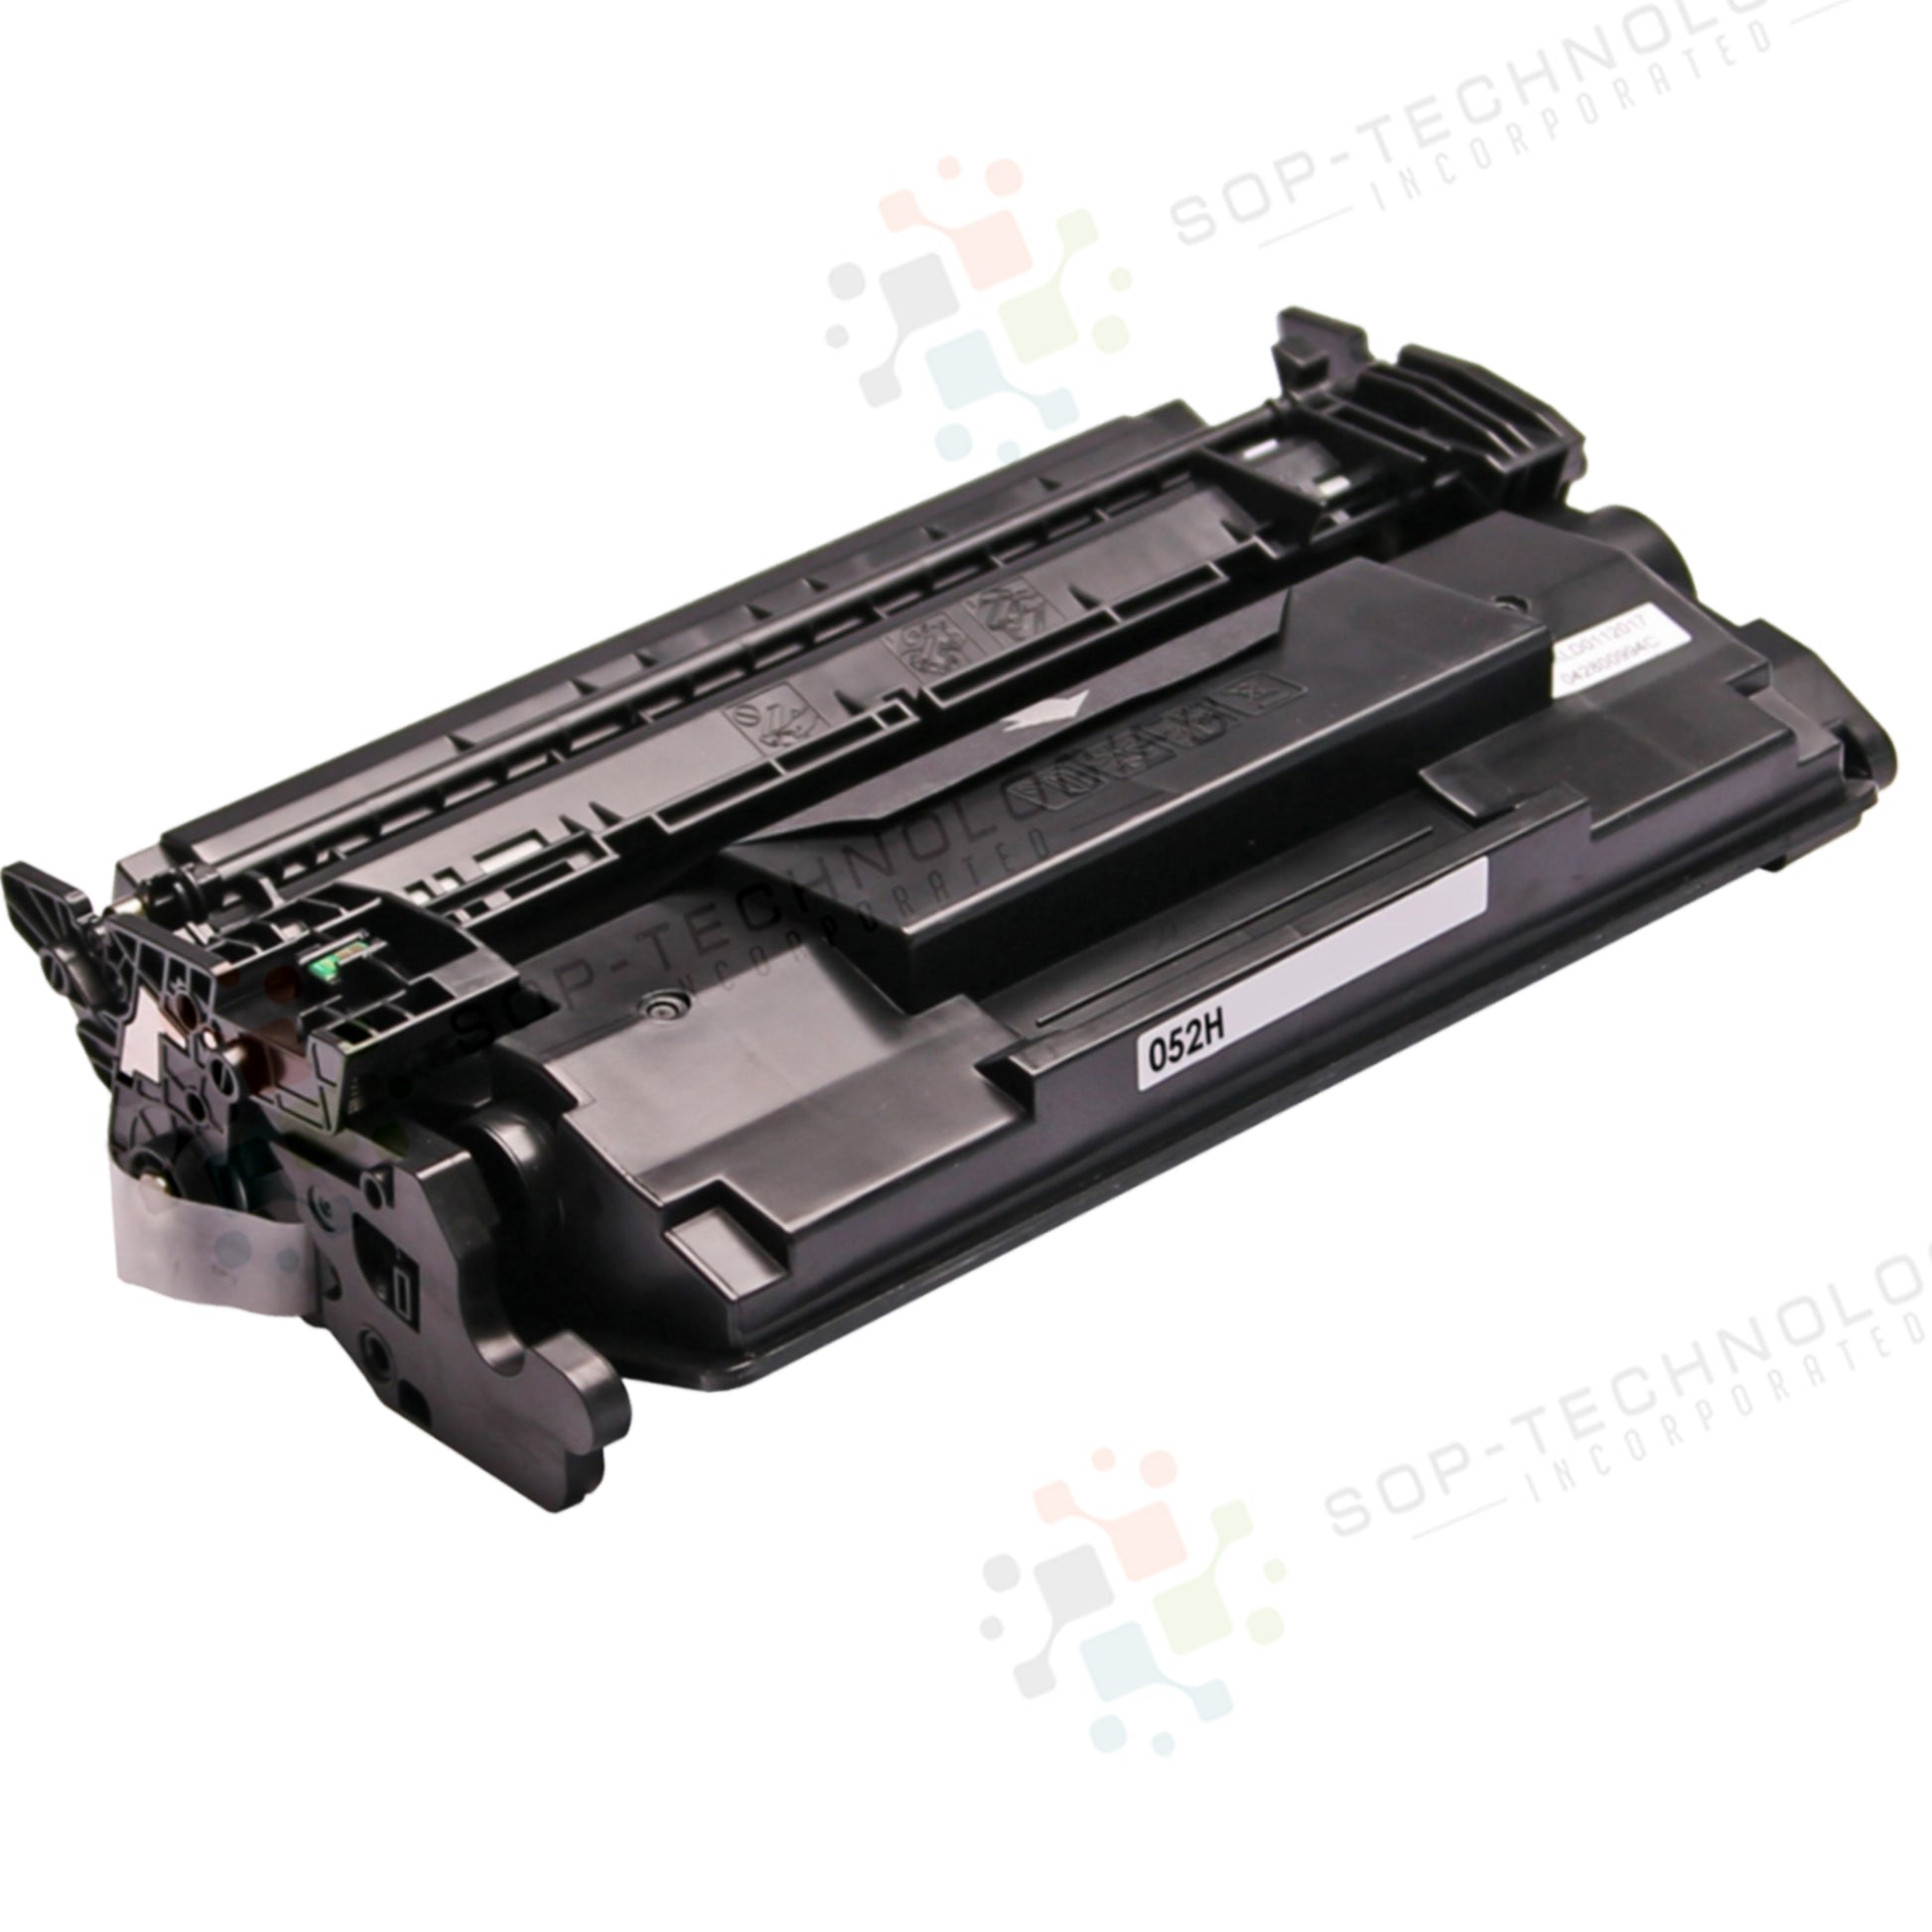 3pk Toner Cartridge for Canon imageCLASS LBP214dw - SOP-TECHNOLOGIES, INC.